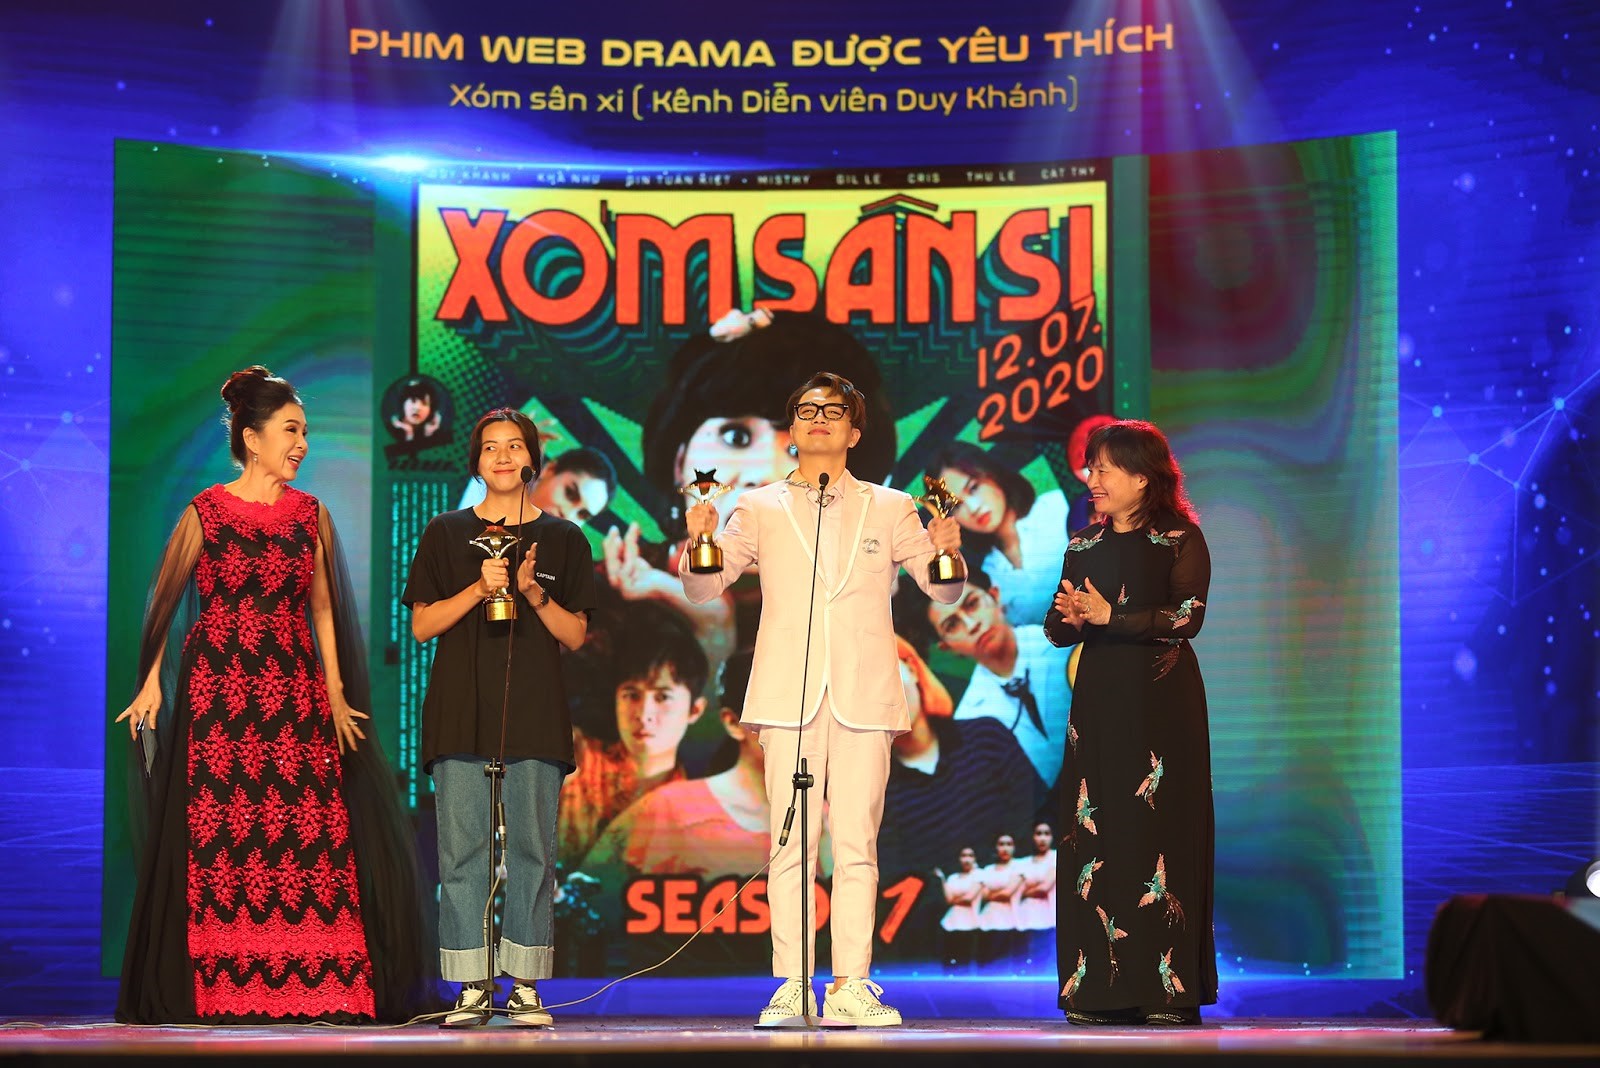 “Xóm sân si” của Duy Khánh nhận&nbsp;giải thưởng Phim Web-drama được yêu thích nhất do khán giả bình chọn tại "Ngôi Sao Xanh 2020"